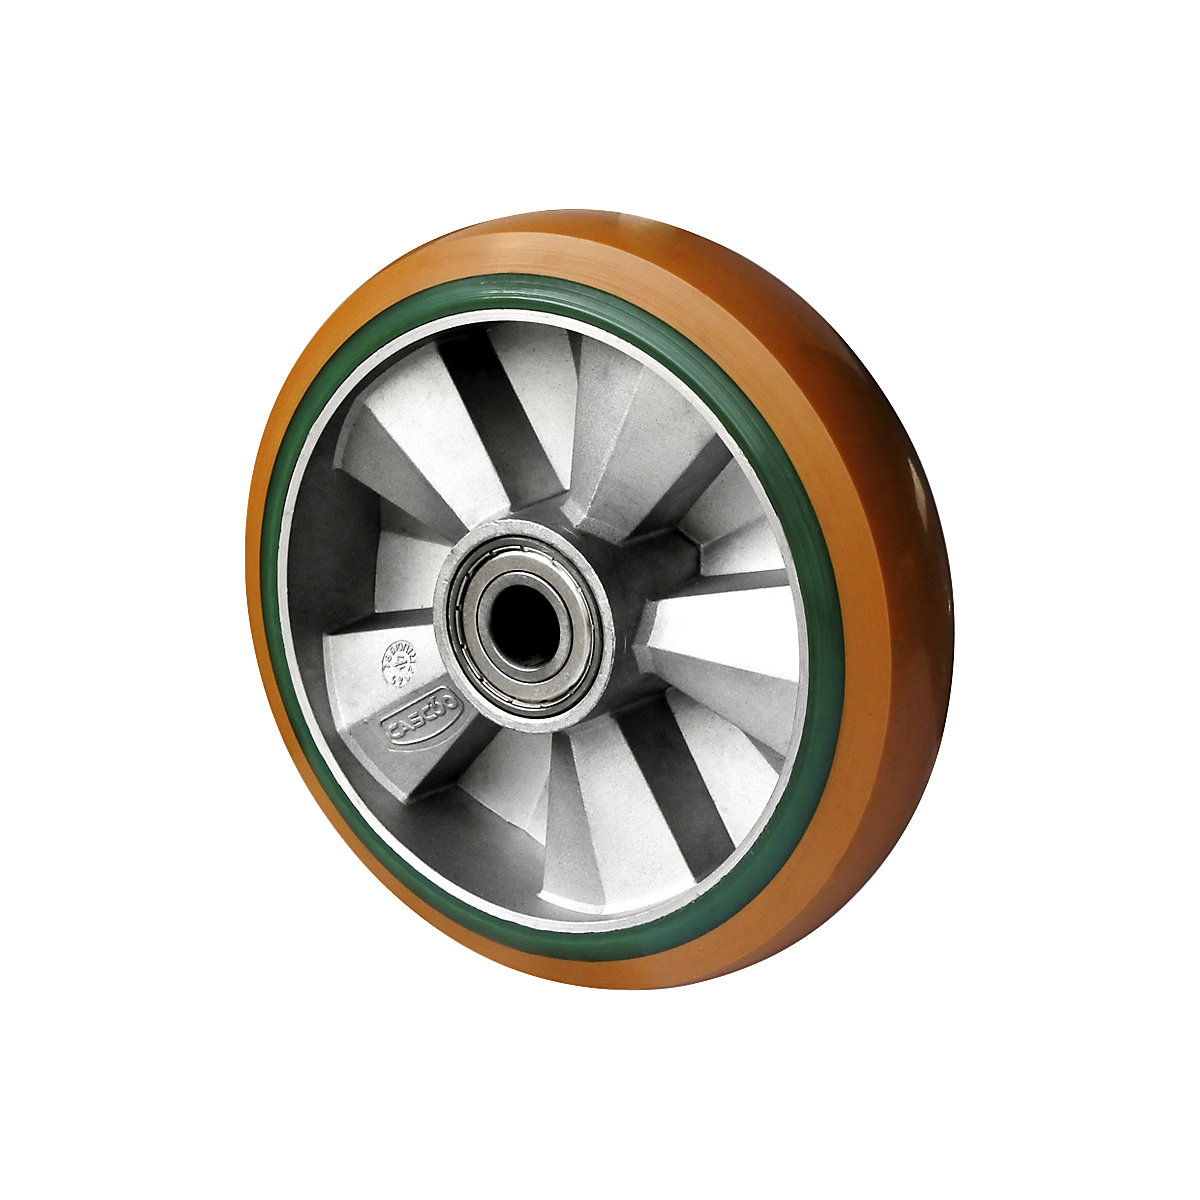 Roue en PU et PU élastique brun/vert, double roulement à billes, à partir de 2 pièces, Ø x largeur roue 160 x 50 mm-3